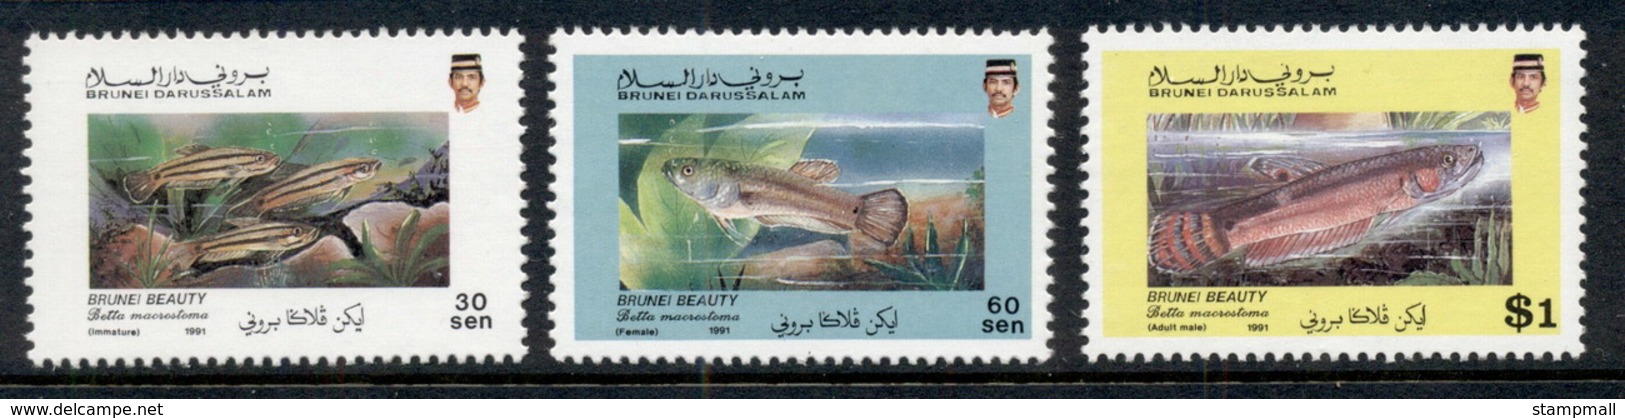 Brunei 1991 Freshwarer Fish MUH - Brunei (1984-...)